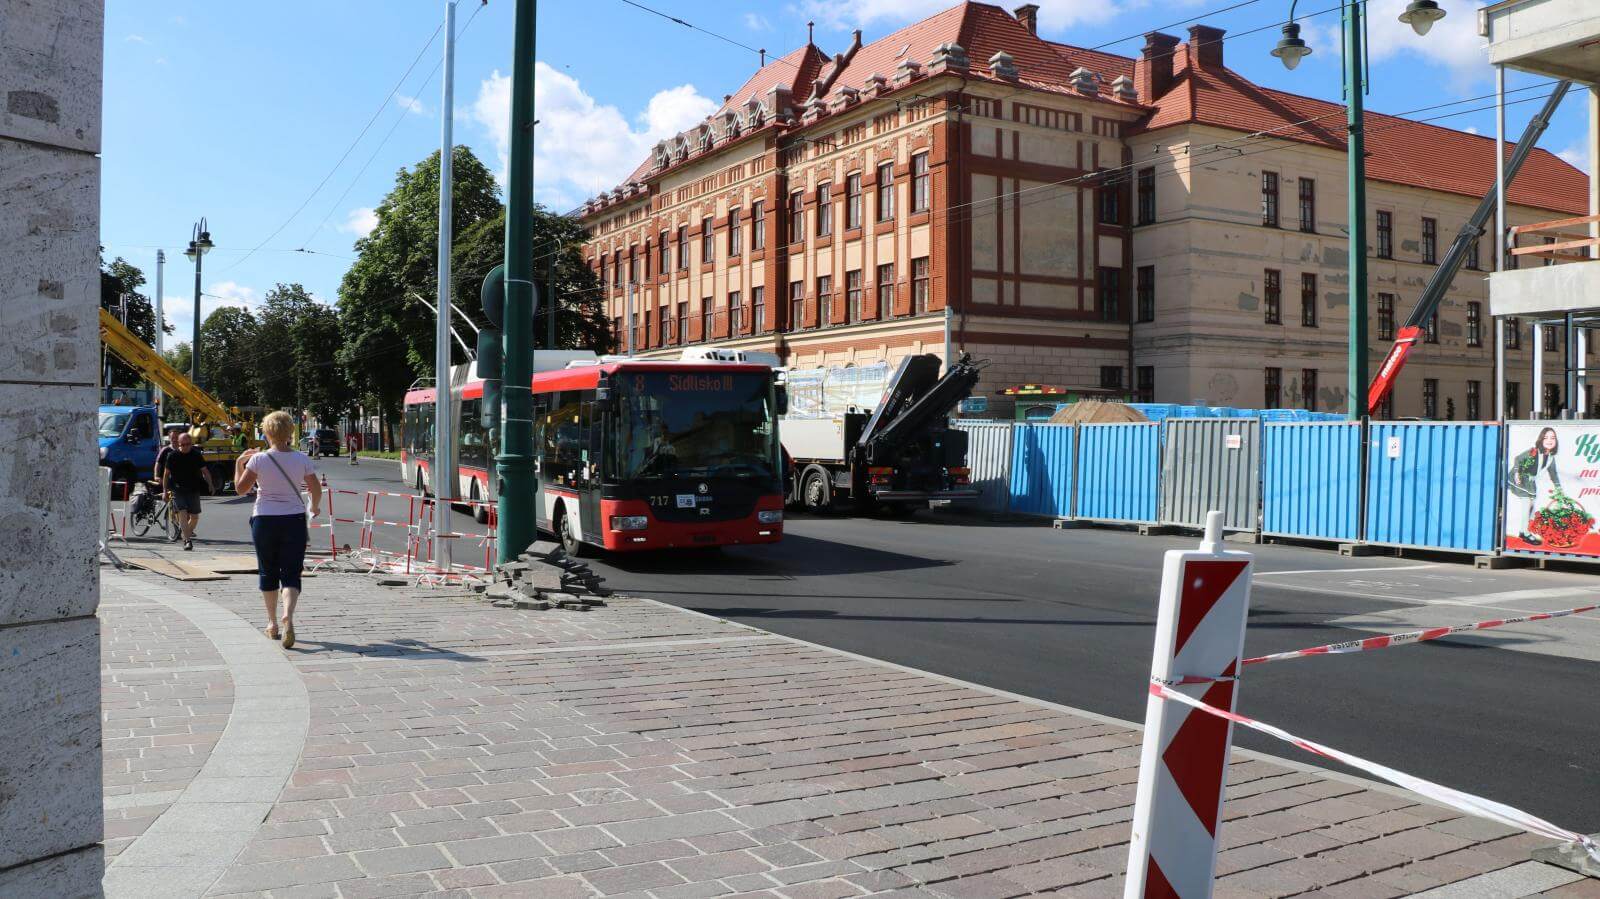 Od 1.9.2020 budú spustené semafory na križovatke Štefánikova – Grešova – Masarykova – Hlavná. Na pôvodné trasy sa vrátia aj linky MHD